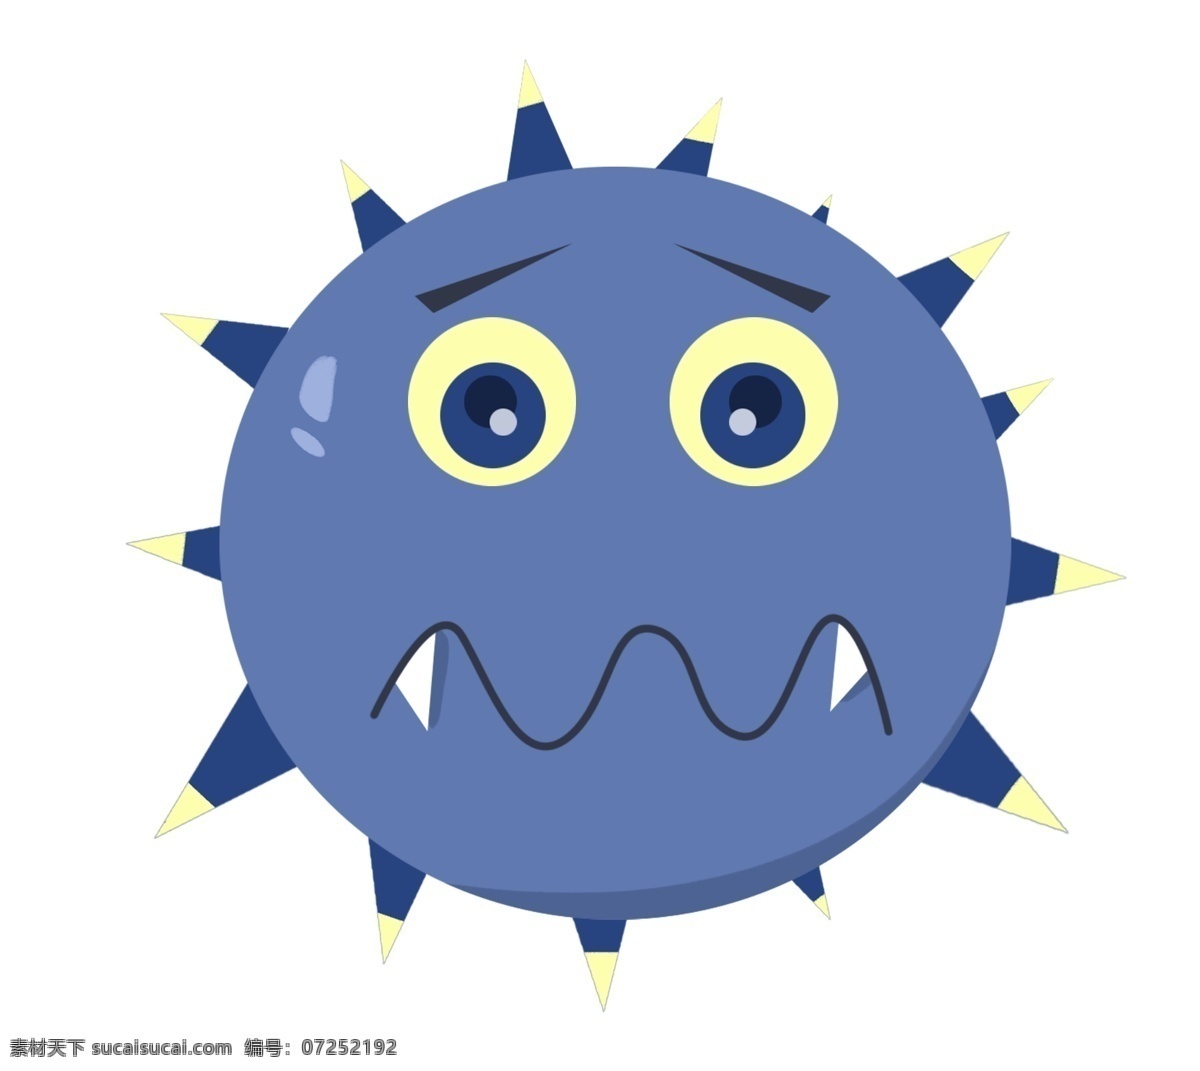 卡通 细菌 表情 漫画 蓝色漫画 细菌感染 卡通漫画细菌 卡通细菌表情 病毒 生病 感染 疾病 表情漫画